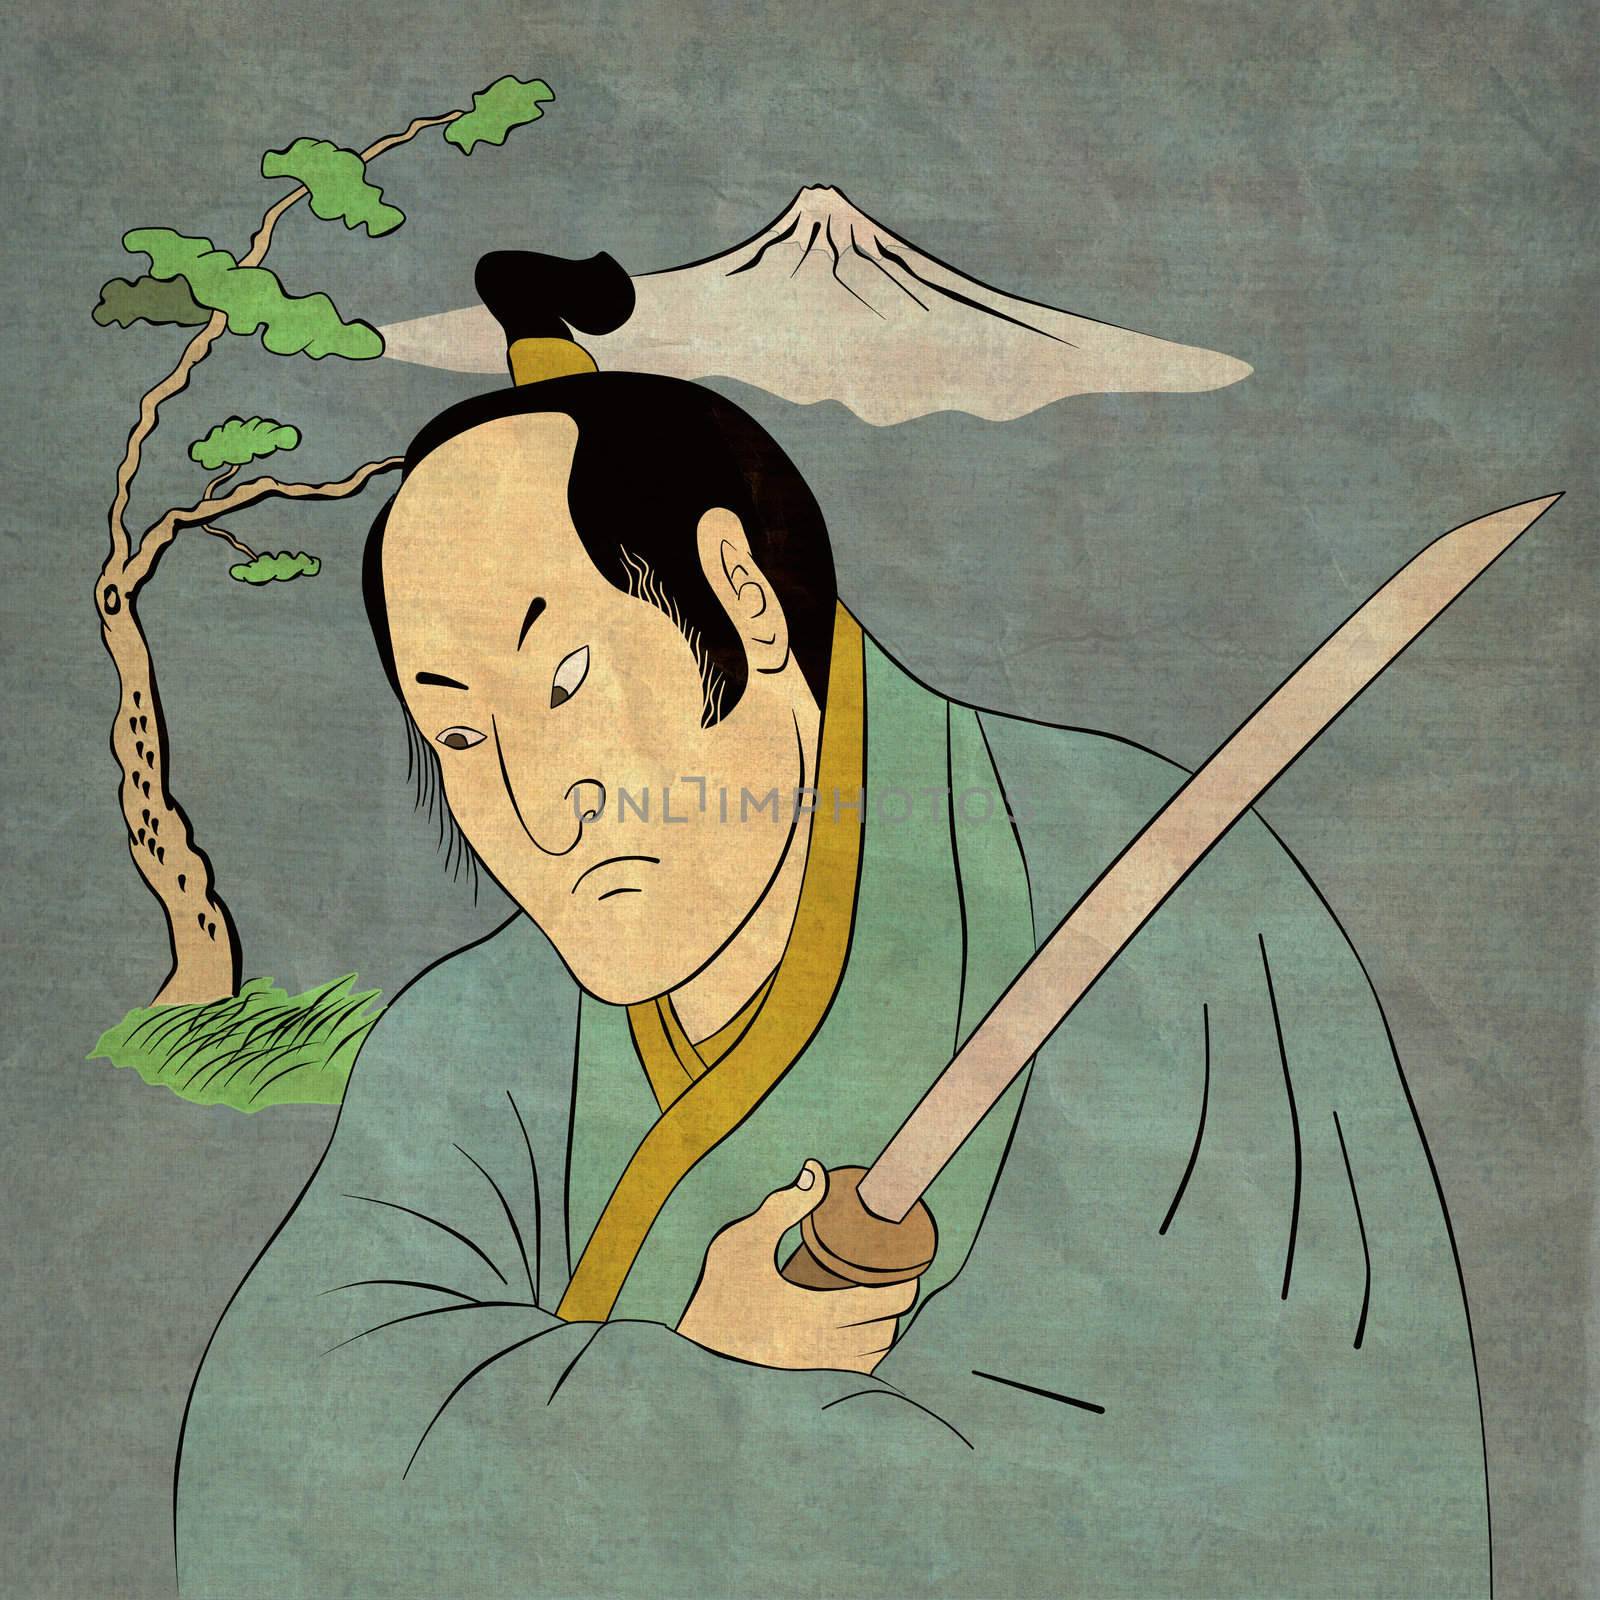 Samurai warrior with katana sword fighting stance by patrimonio